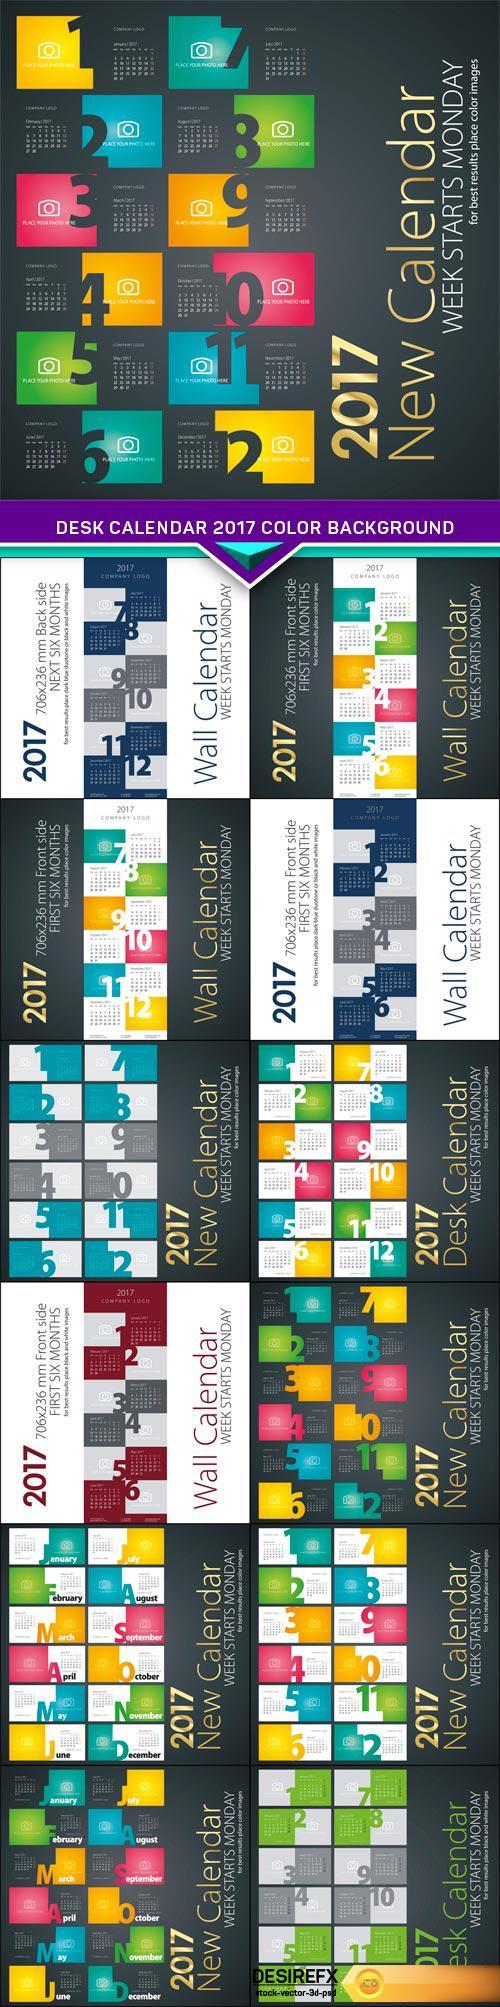 Desk calendar 2017 color background 13X EPS